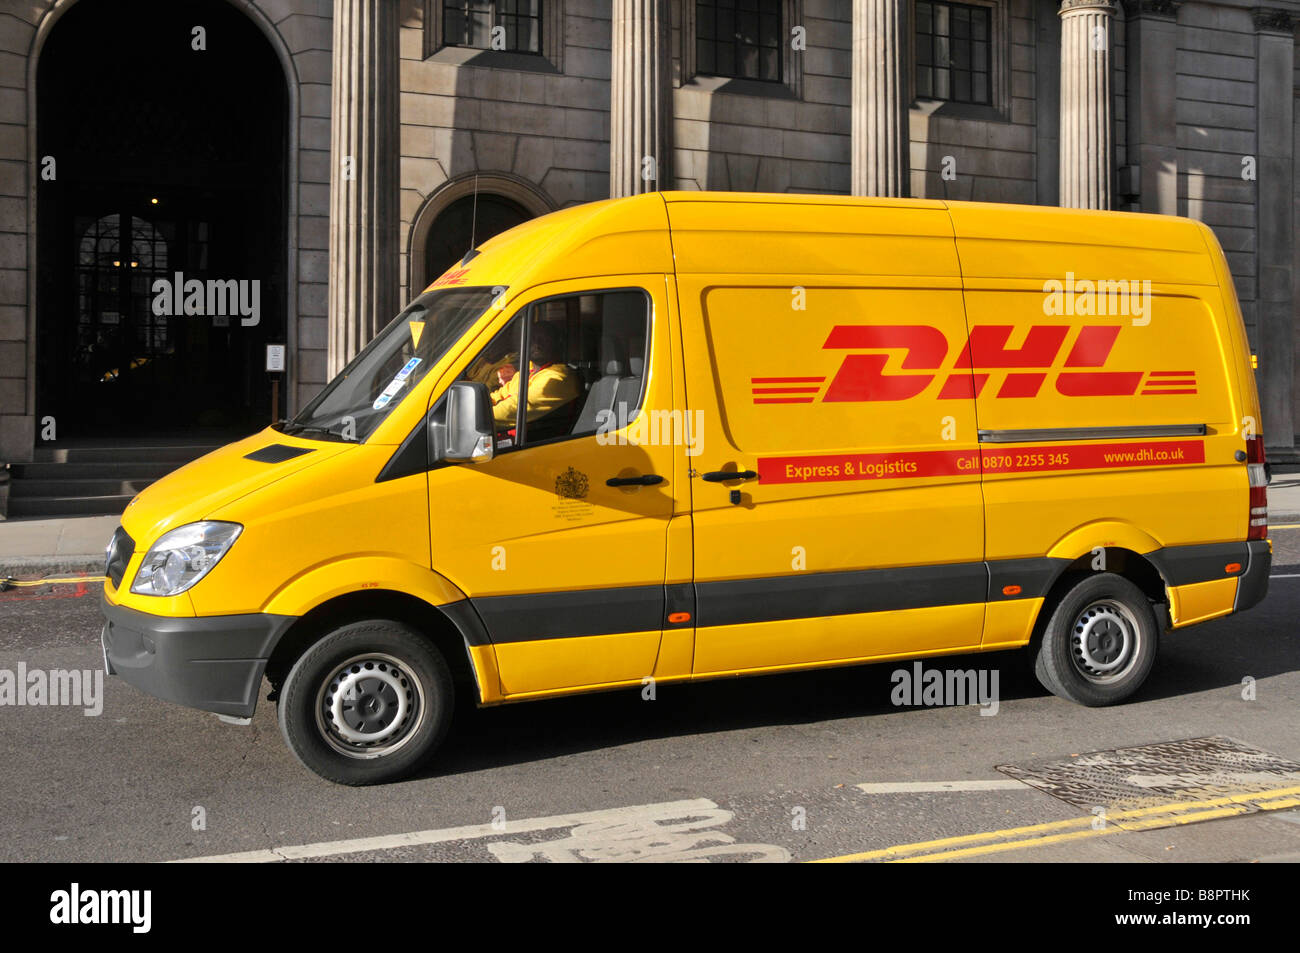 Livraison de colis DHL van hors Banque d'Angleterre van retiré dans photoshop graffiti voir image PTHN8B Nombre d'écriture Graffiti Banque D'Images